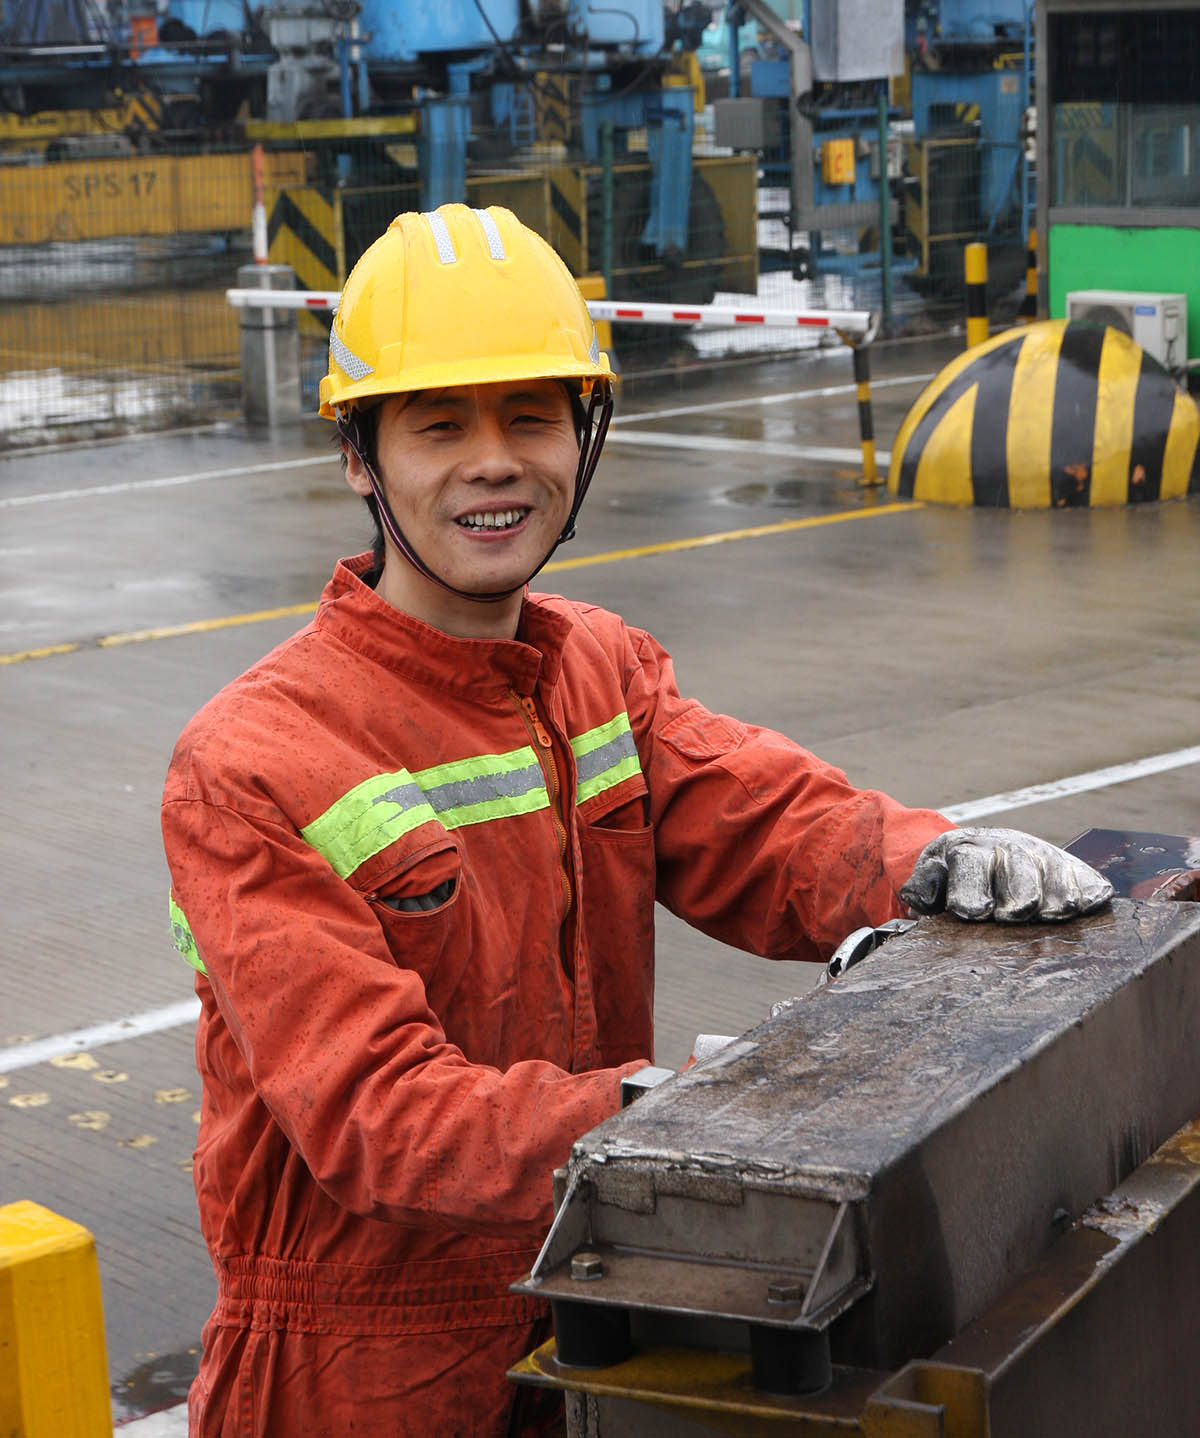 现任宁波港北仑第二集装箱码头分公司龙门吊维修班副班长。